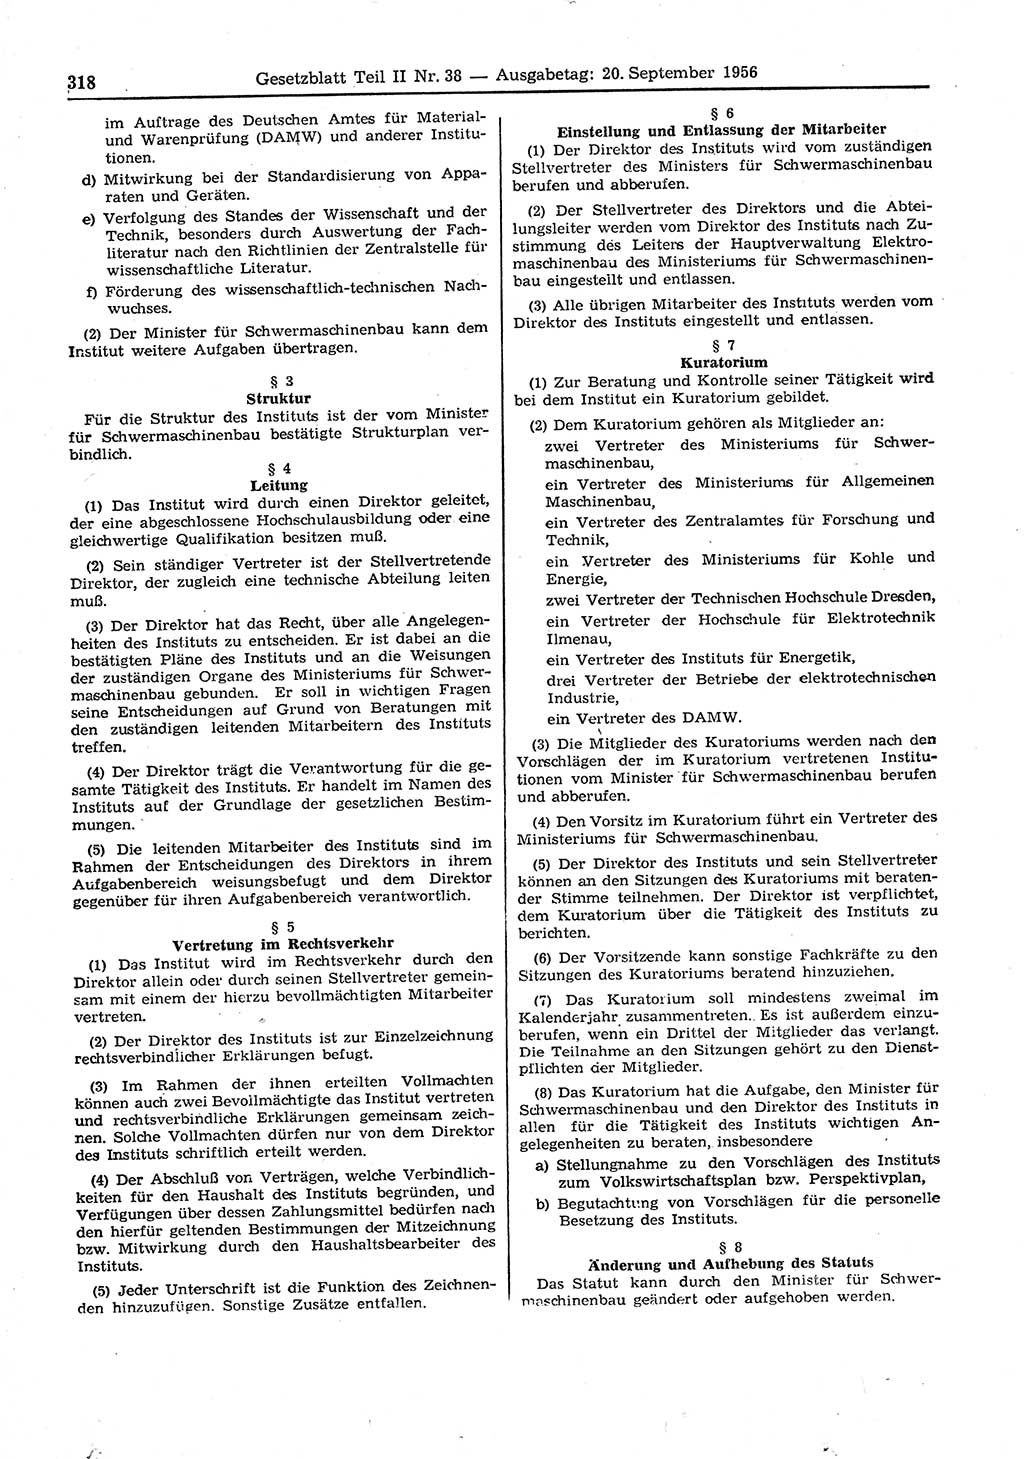 Gesetzblatt (GBl.) der Deutschen Demokratischen Republik (DDR) Teil ⅠⅠ 1956, Seite 318 (GBl. DDR ⅠⅠ 1956, S. 318)